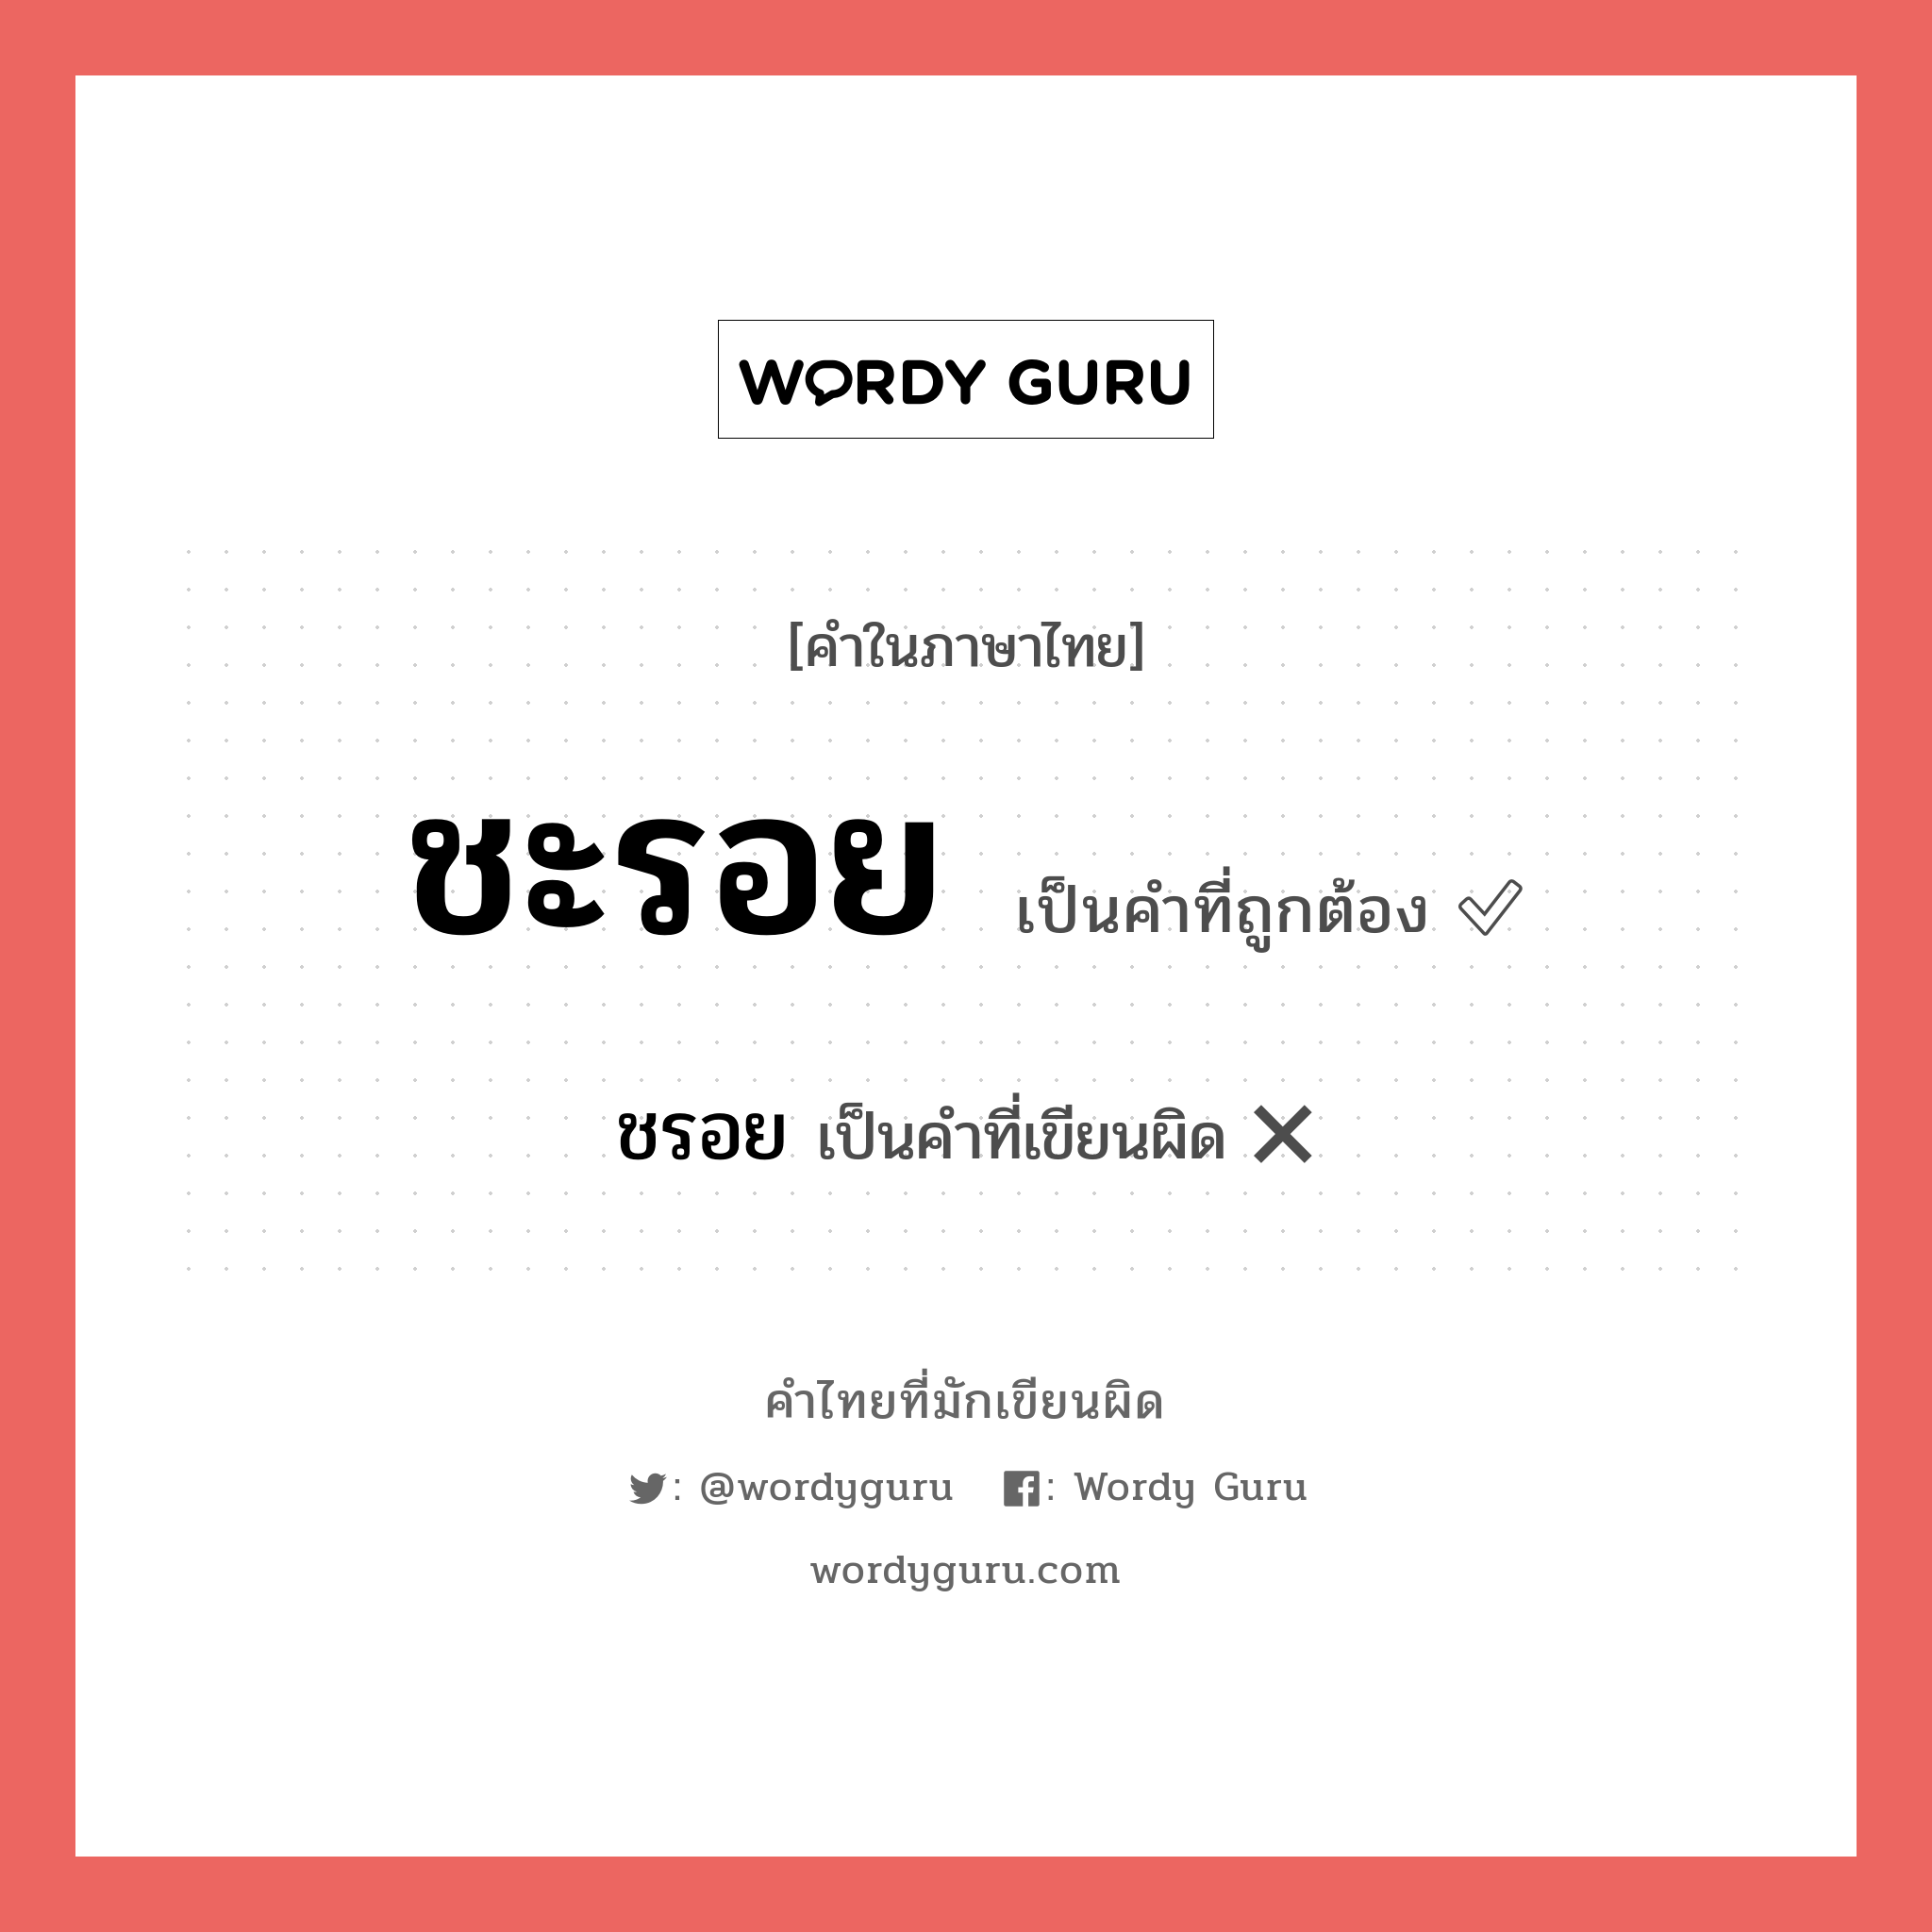 ชะรอย หรือ ชรอย เขียนยังไง? คำไหนเขียนถูก?, คำในภาษาไทยที่มักเขียนผิด ชะรอย คำที่ผิด ❌ ชรอย